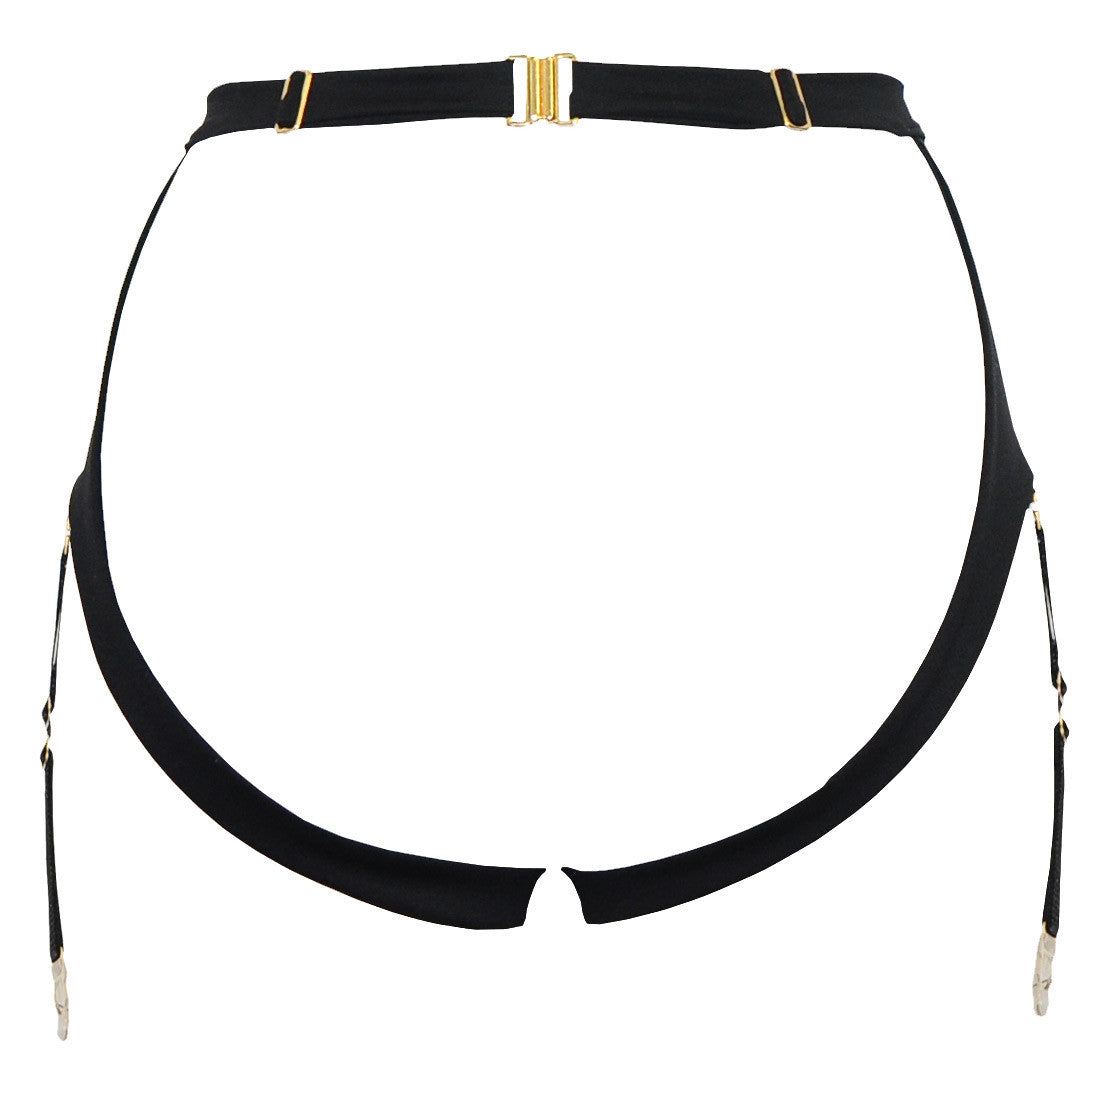 DSTM Maya suspender belt black ouvert knicker with removable suspender straps